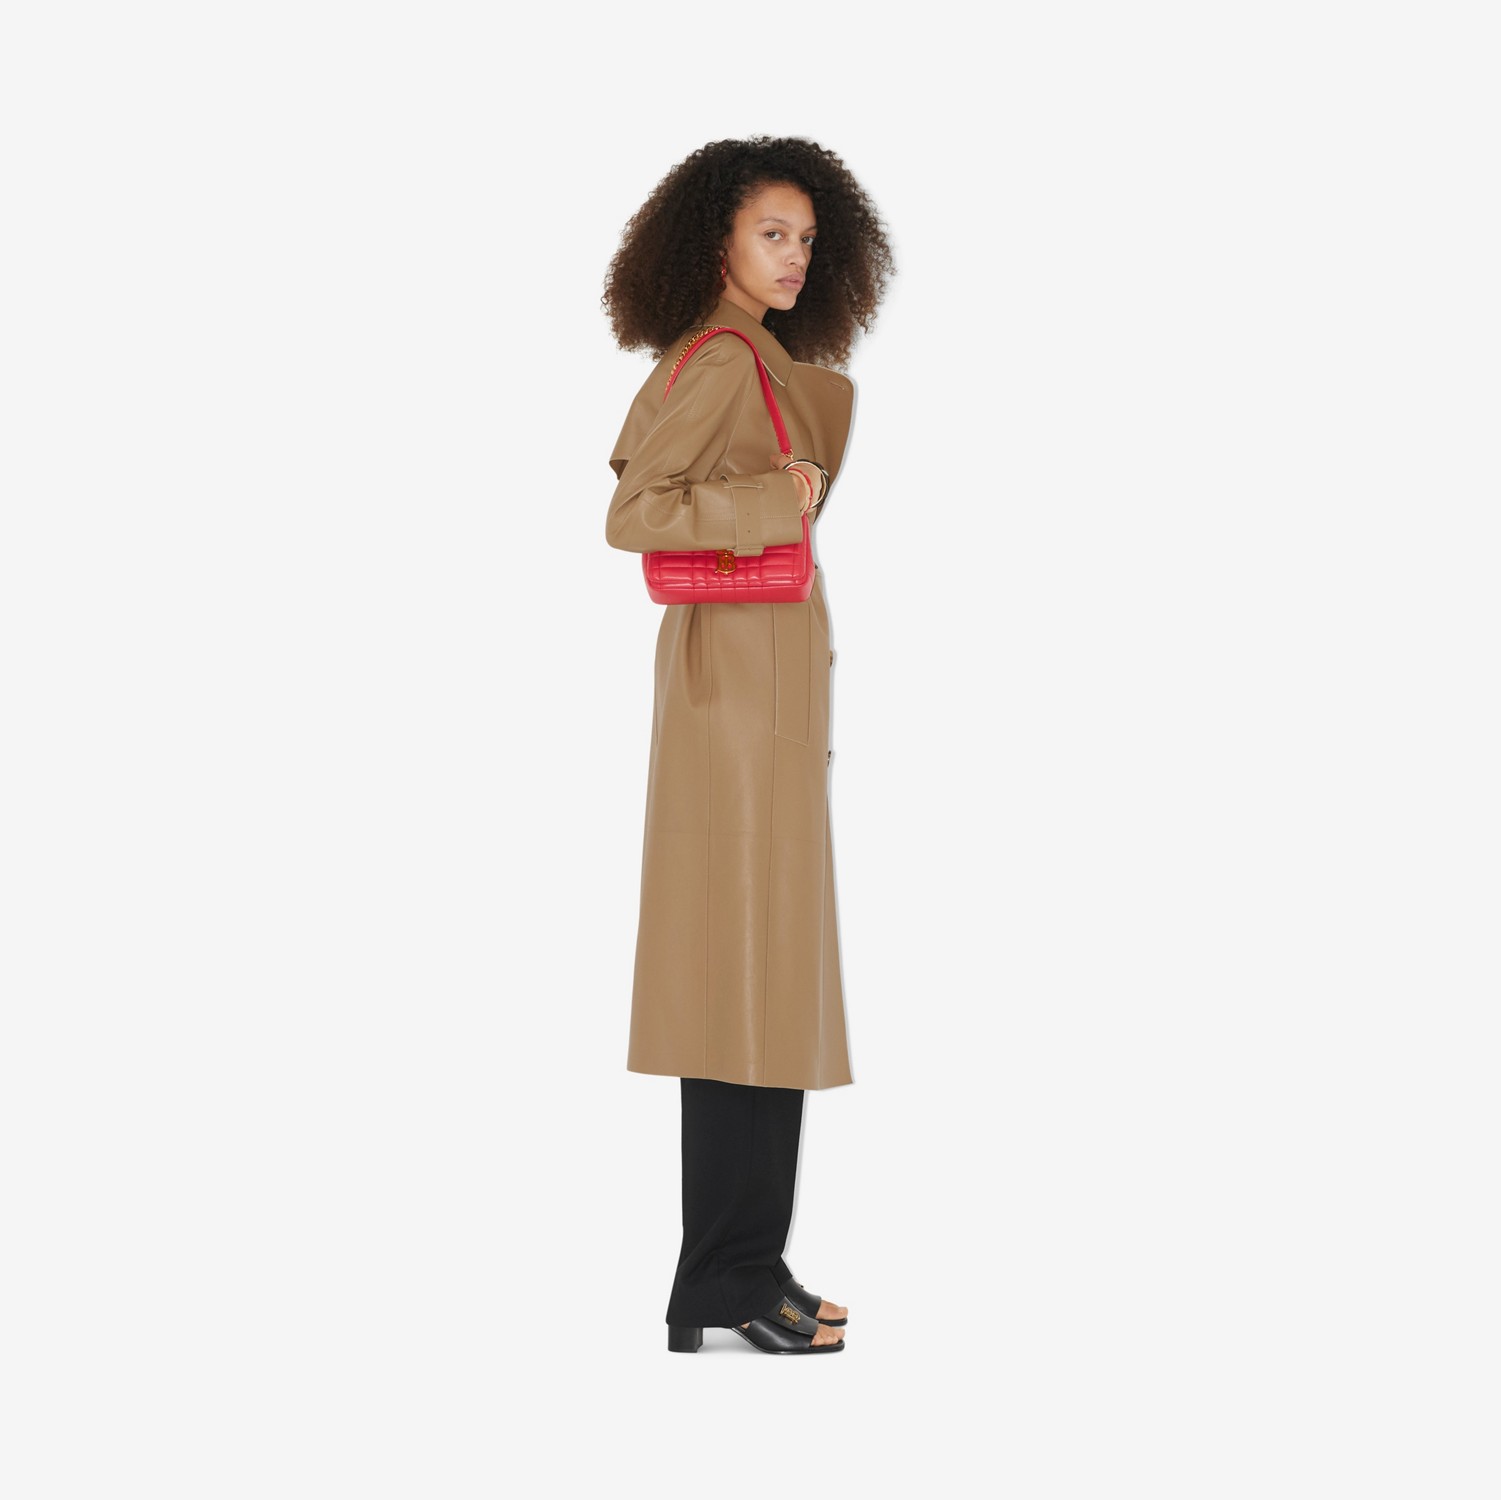 滑铁卢版型 - 皮革 Trench 风衣 (驼色) - 女士 | Burberry® 博柏利官网